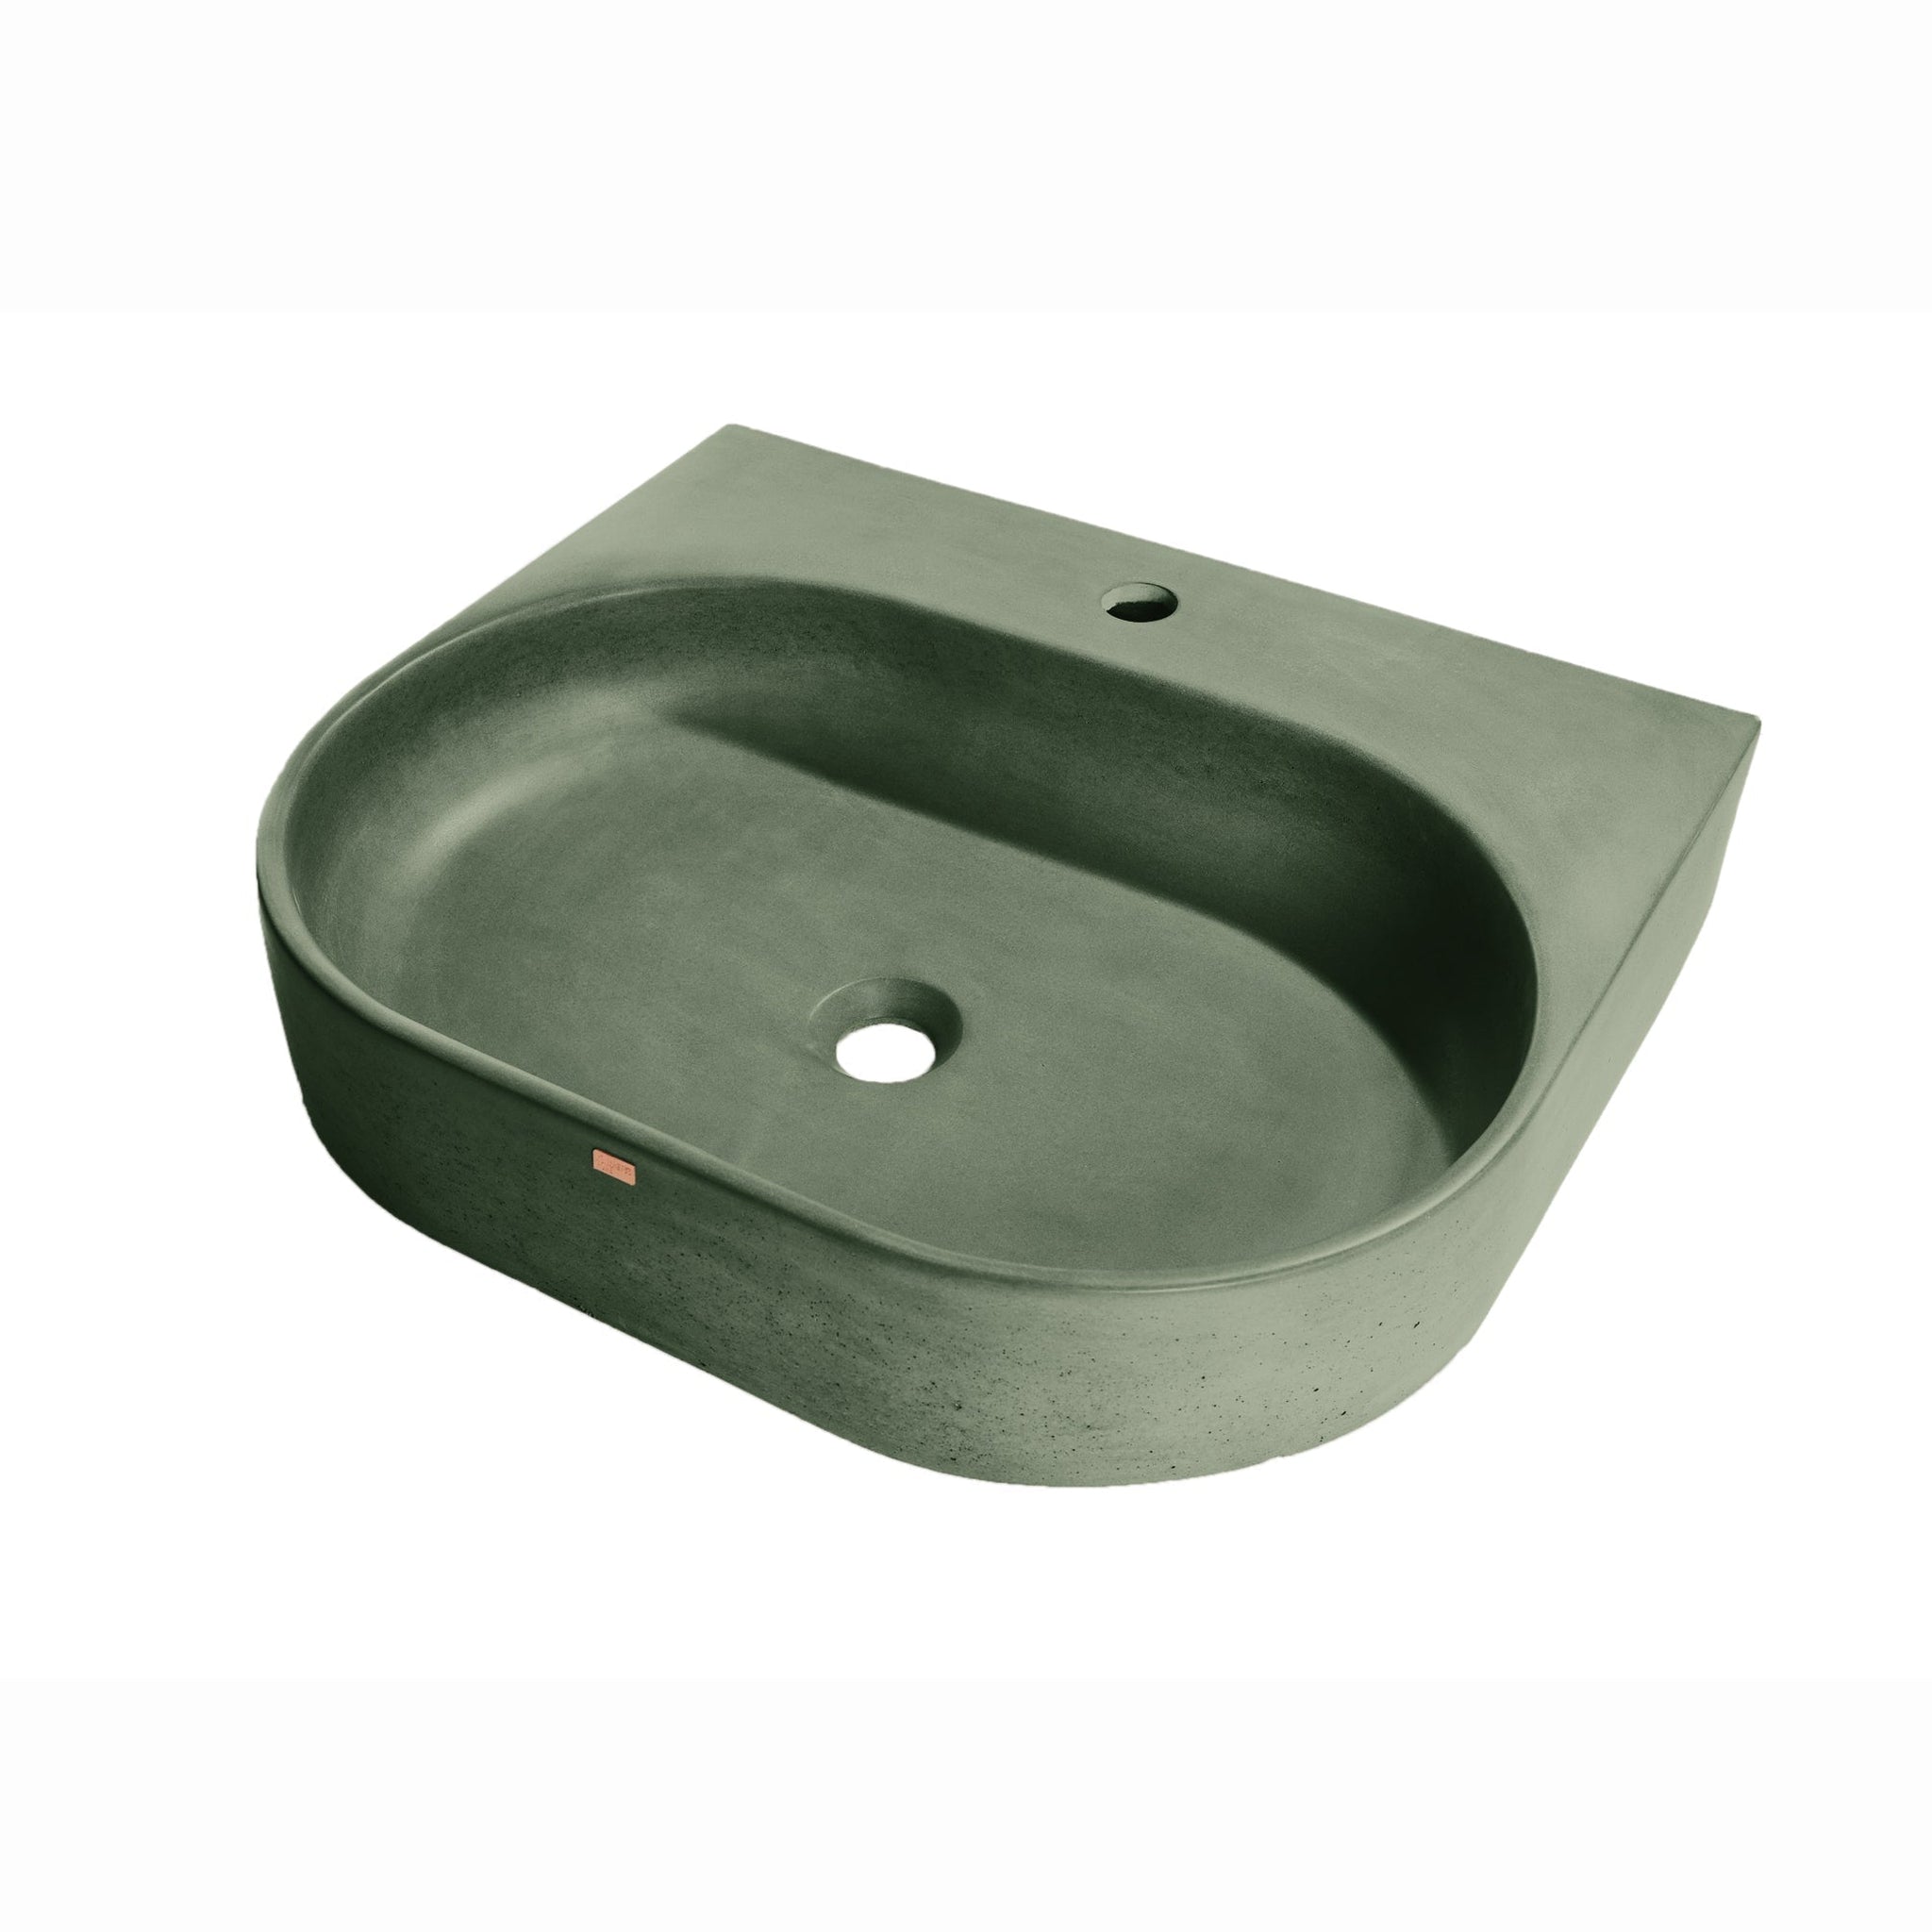 Konkretus, Konkretus Bahia02 22" Amazonic Green Wall-Mounted Vessel Concrete Bathroom Sink